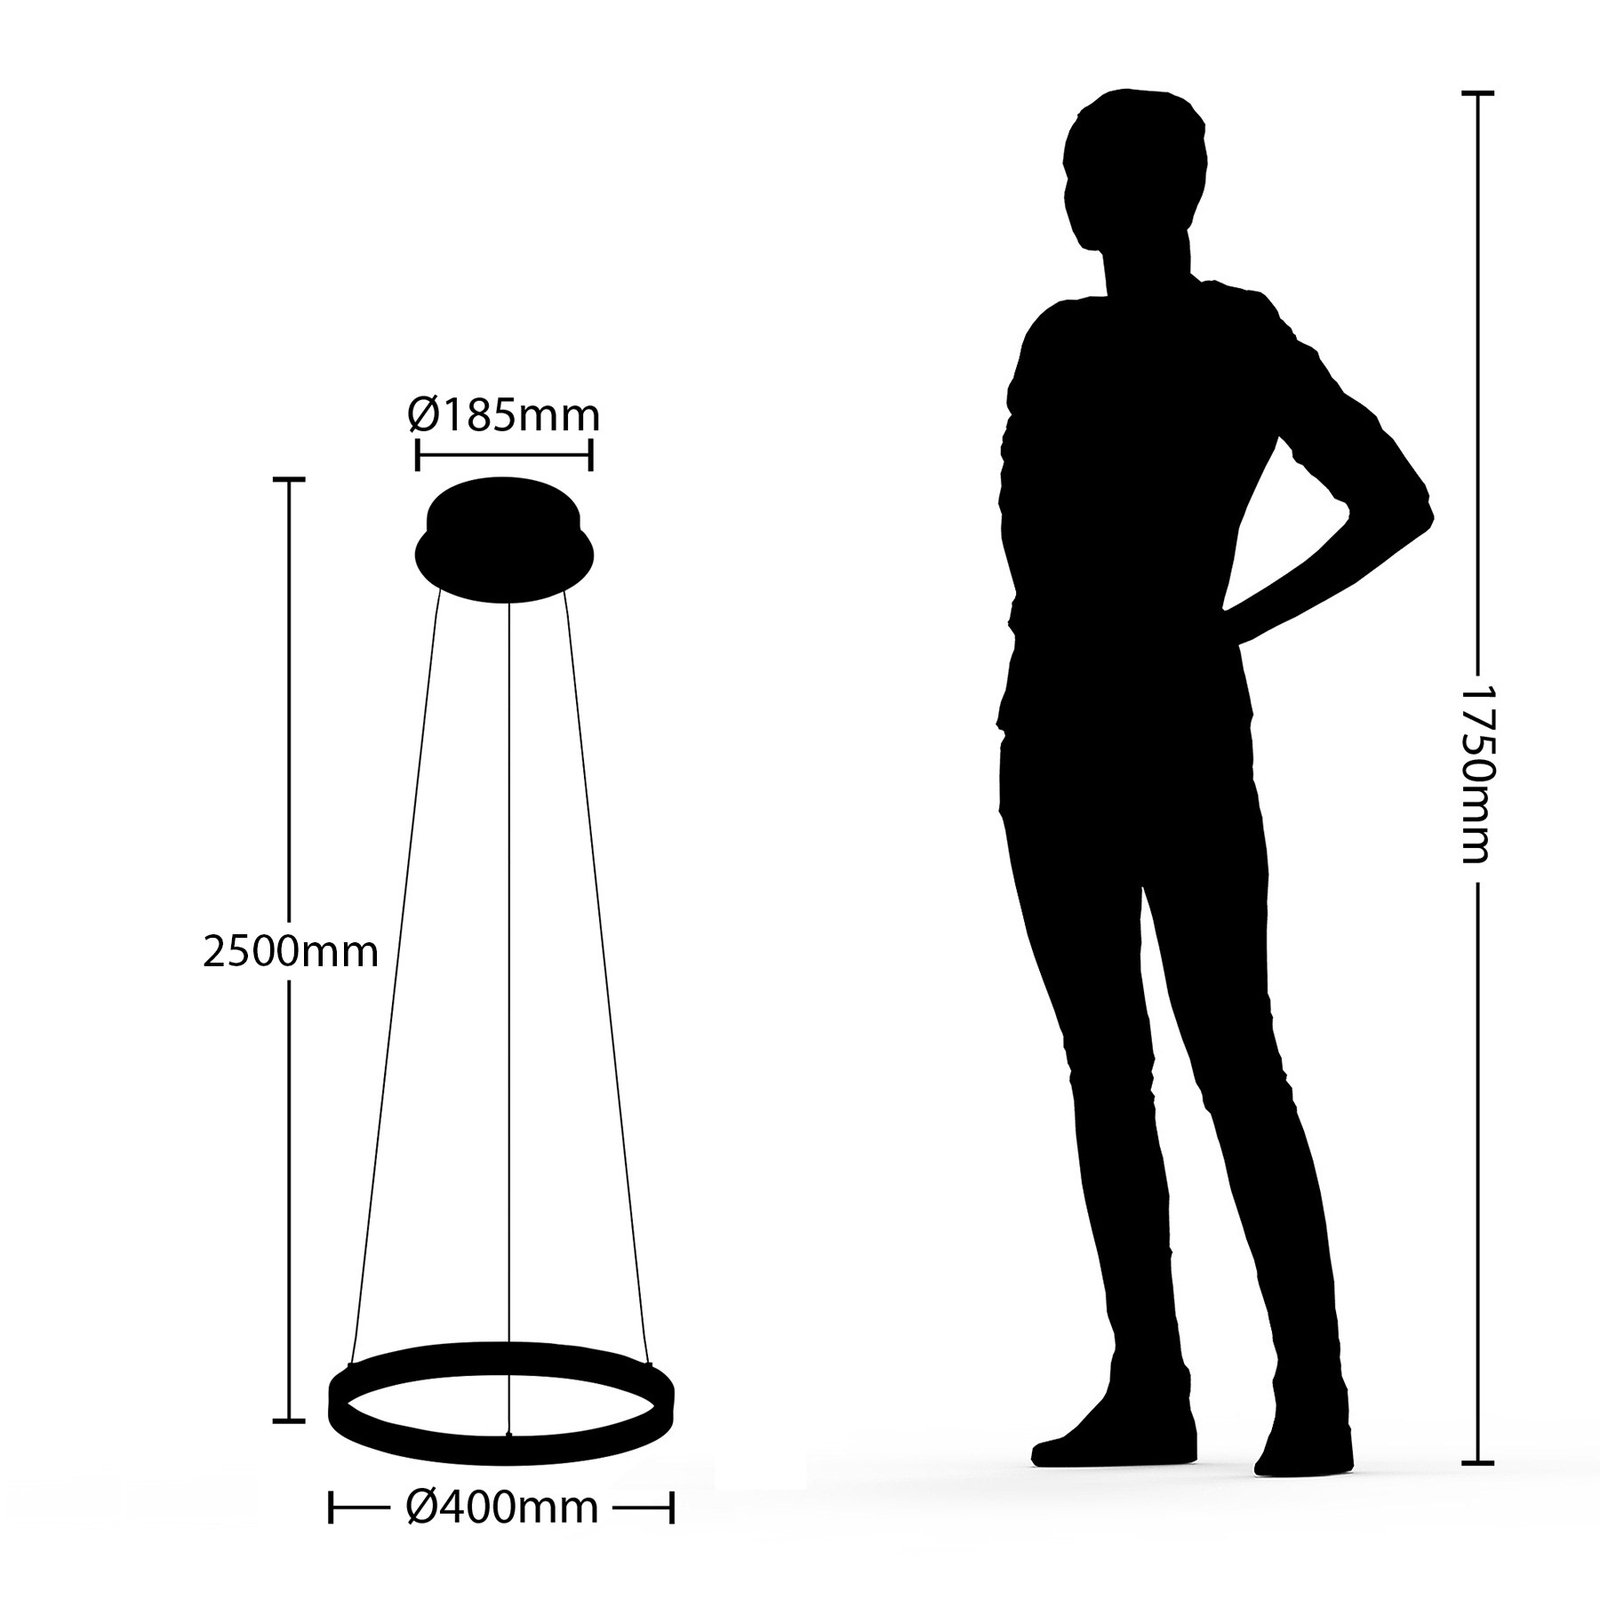 Arcchio Albiona LED závěsné světlo, 1 kruh, 40 cm